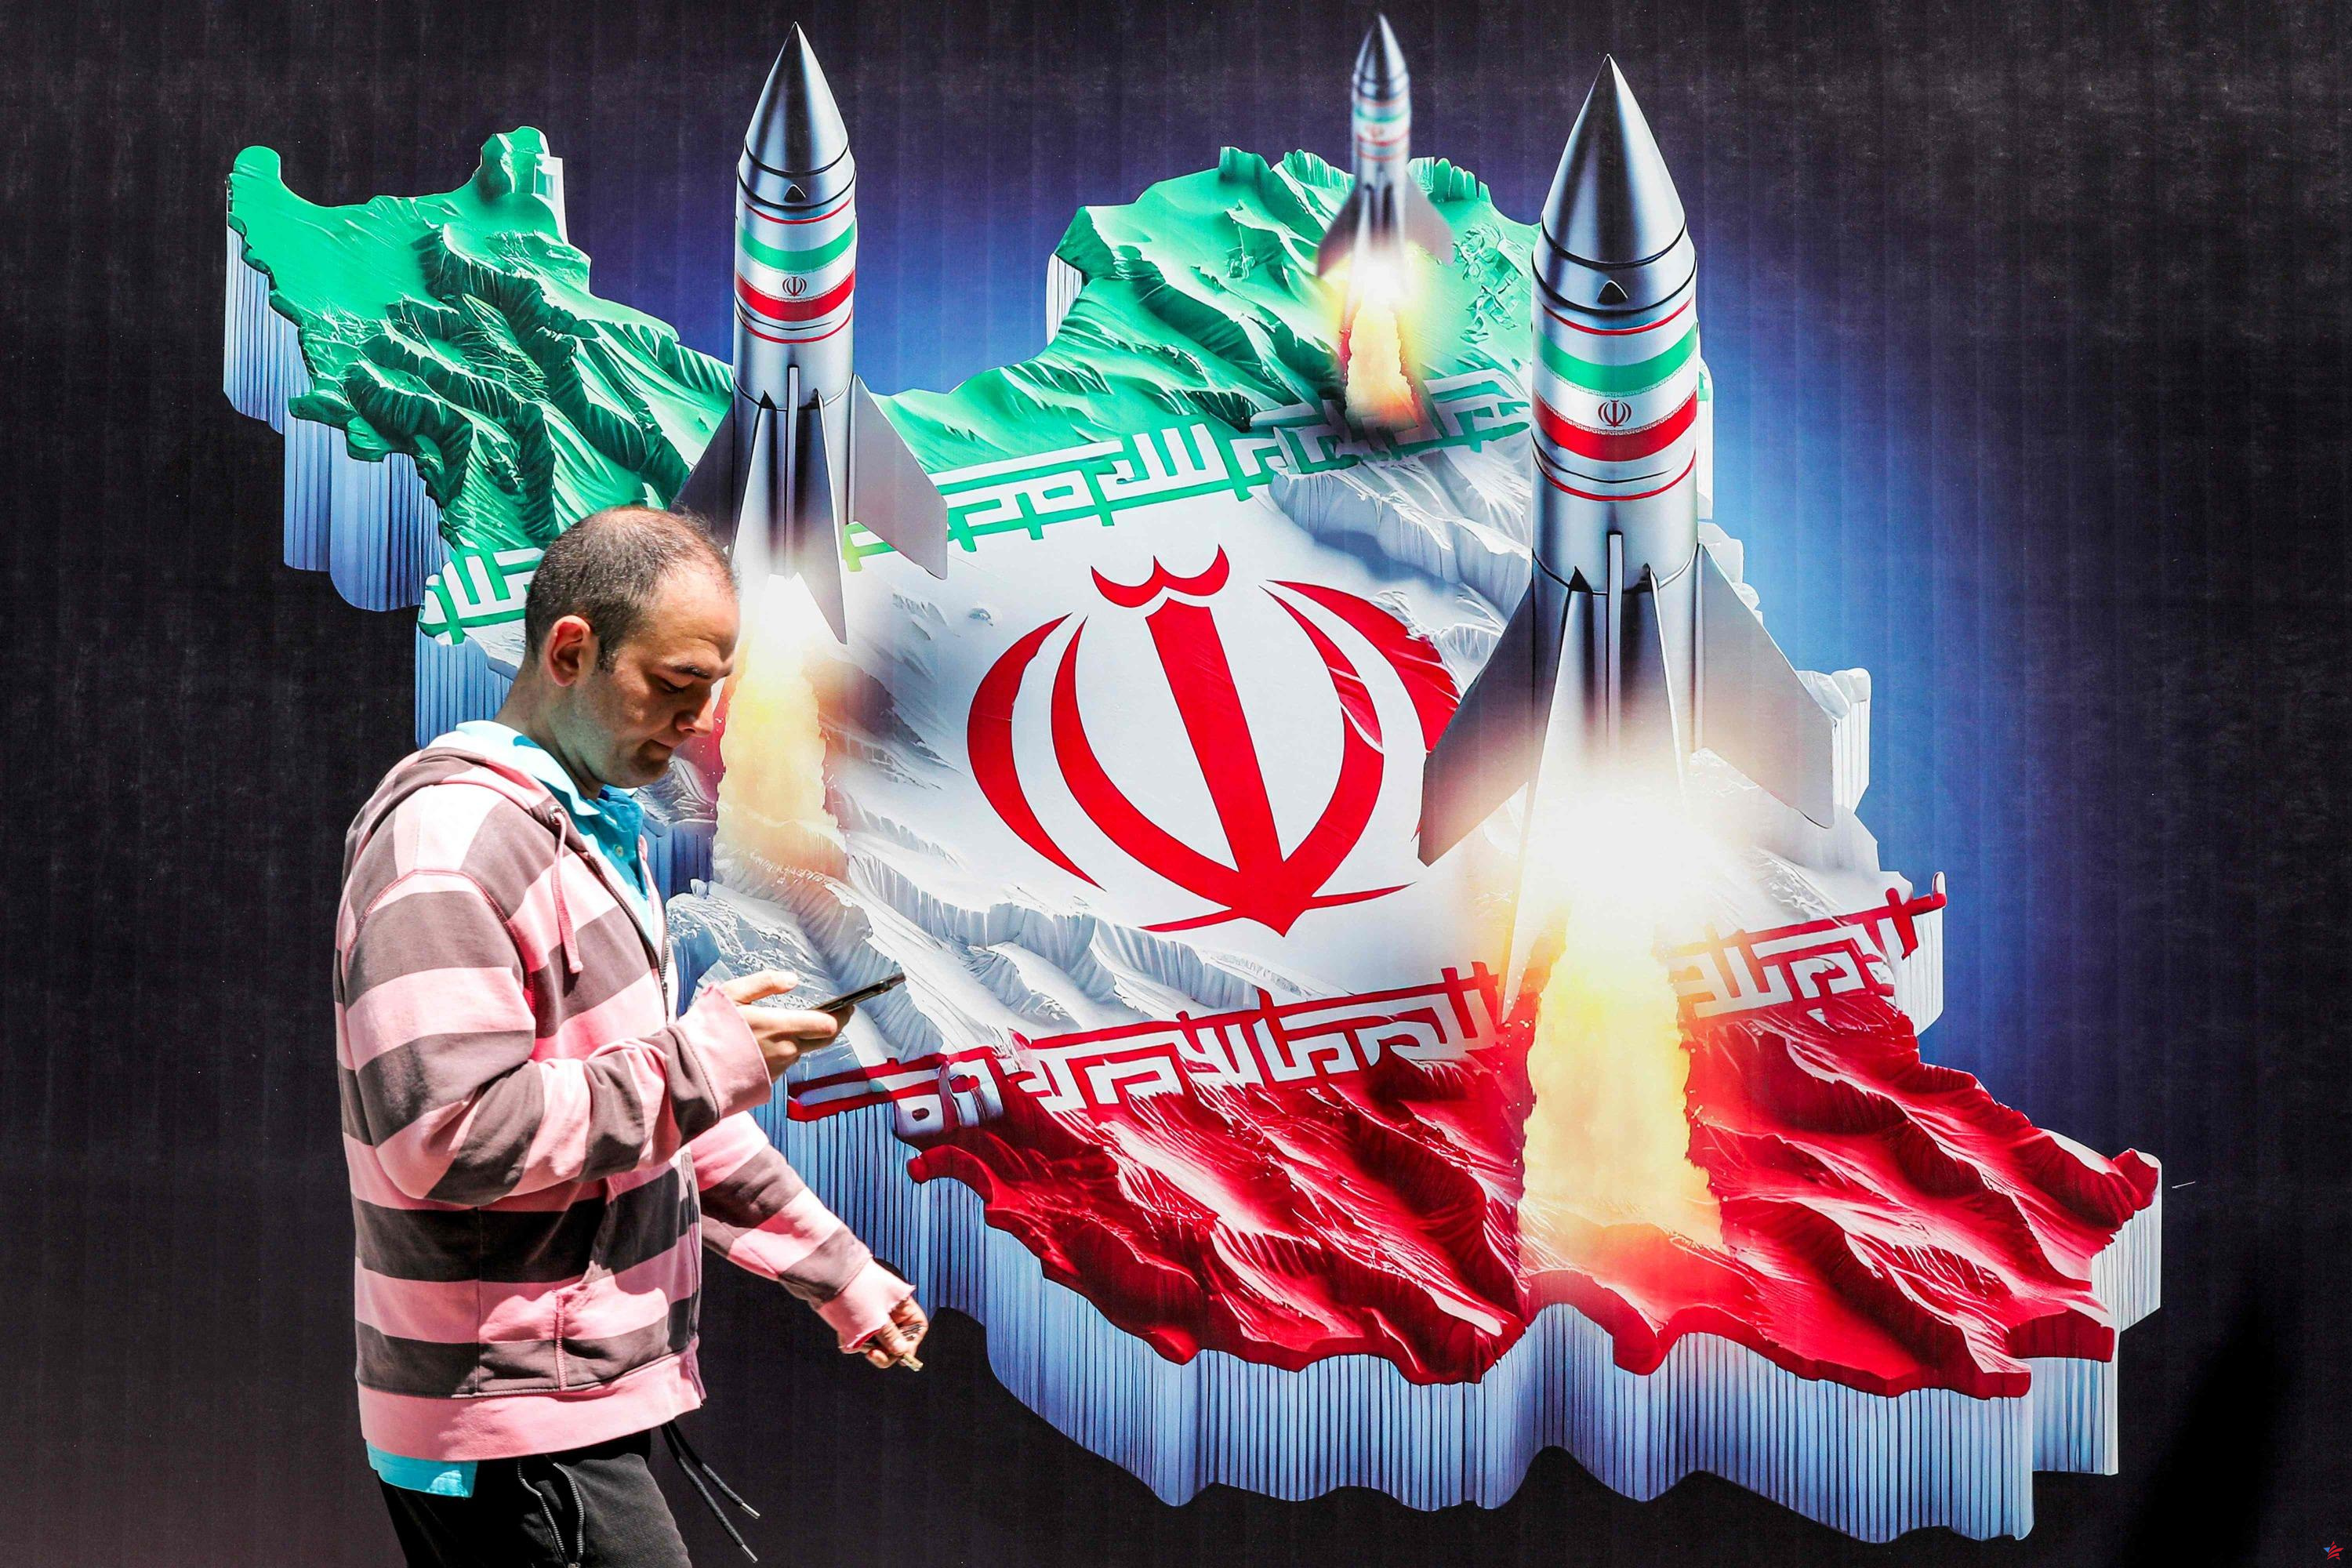 Guerra informativa: cuando Irán intenta influir en la política francesa